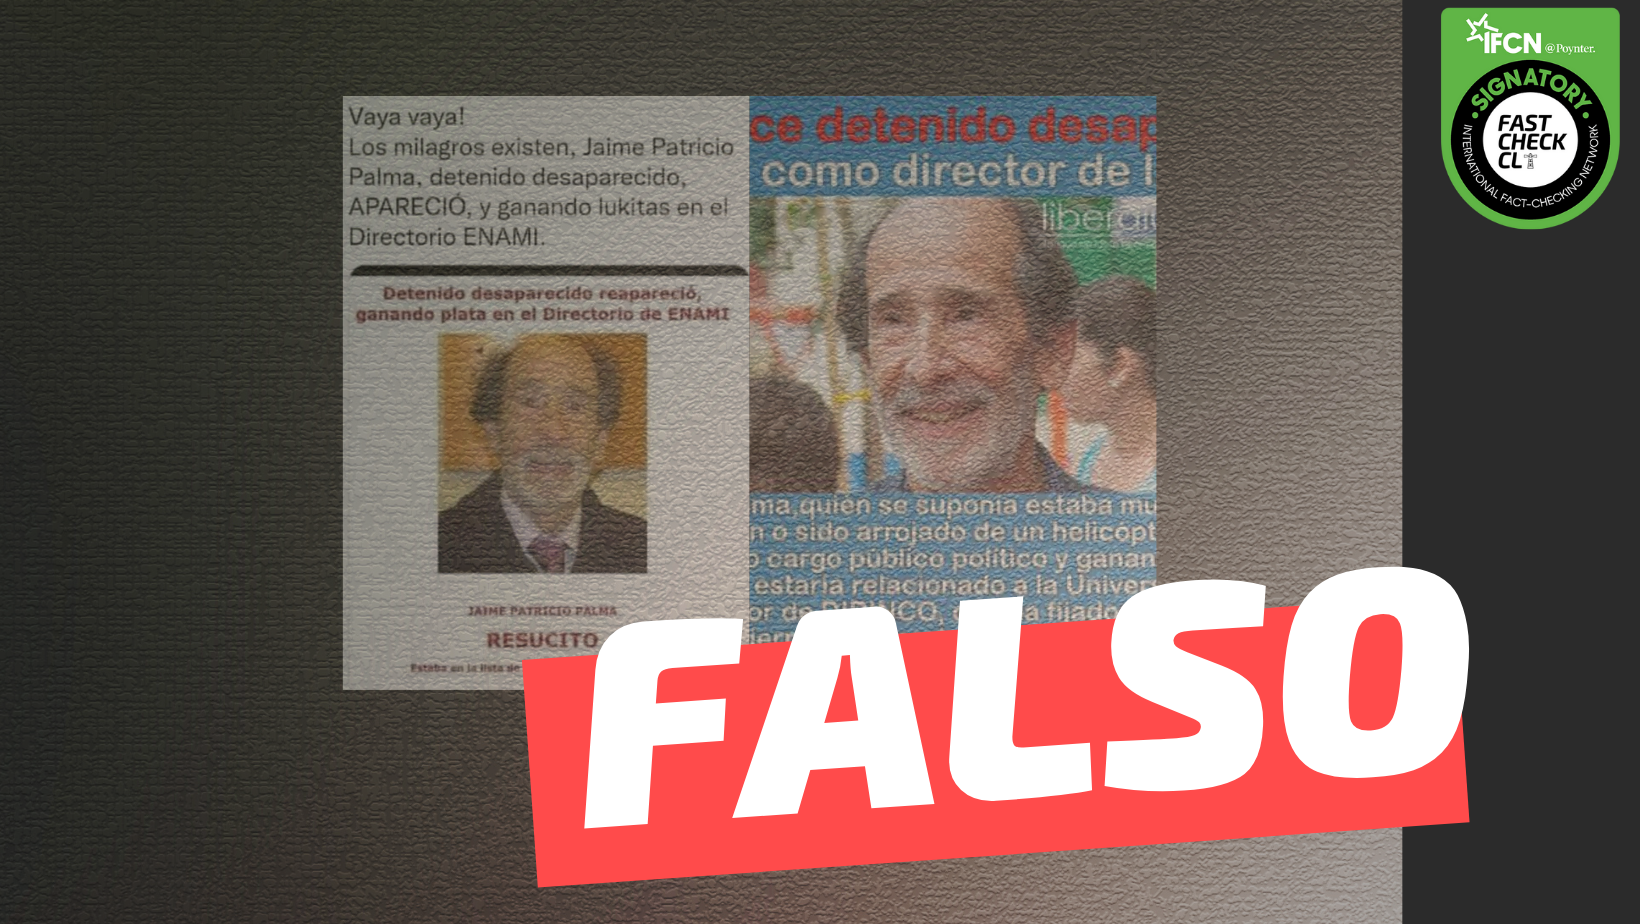 You are currently viewing “Jaime Patricio Palma, detenido desaparecido, apareció como director de la ENAMI”: #Falso